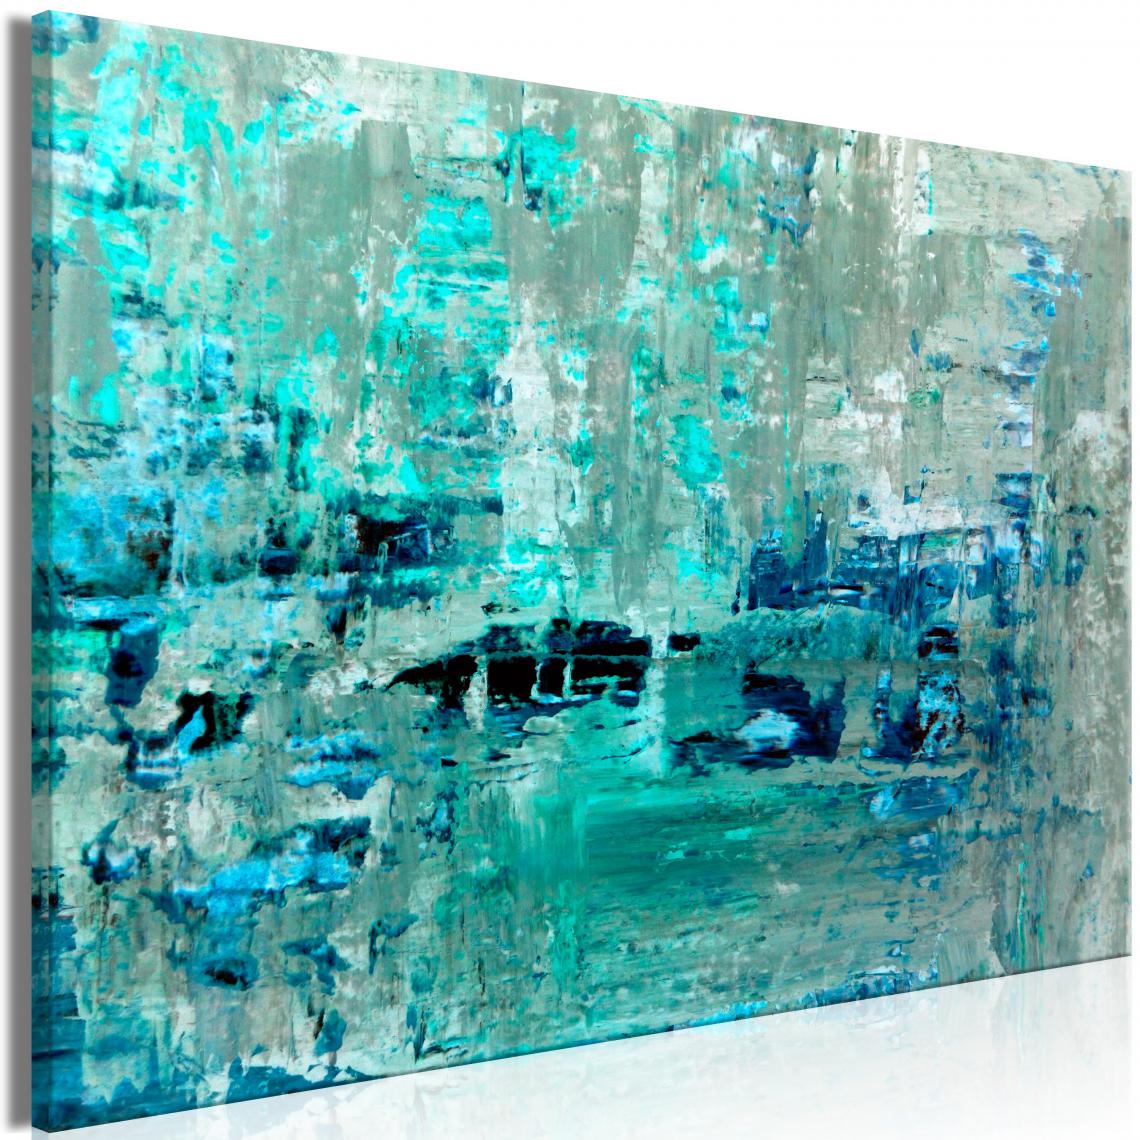 Decoshop26 - Tableau sur toile décoration murale image imprimée cadre en bois à suspendre Feuille de glace (1 partie) large 120x80 cm 11_0002613 - Tableaux, peintures